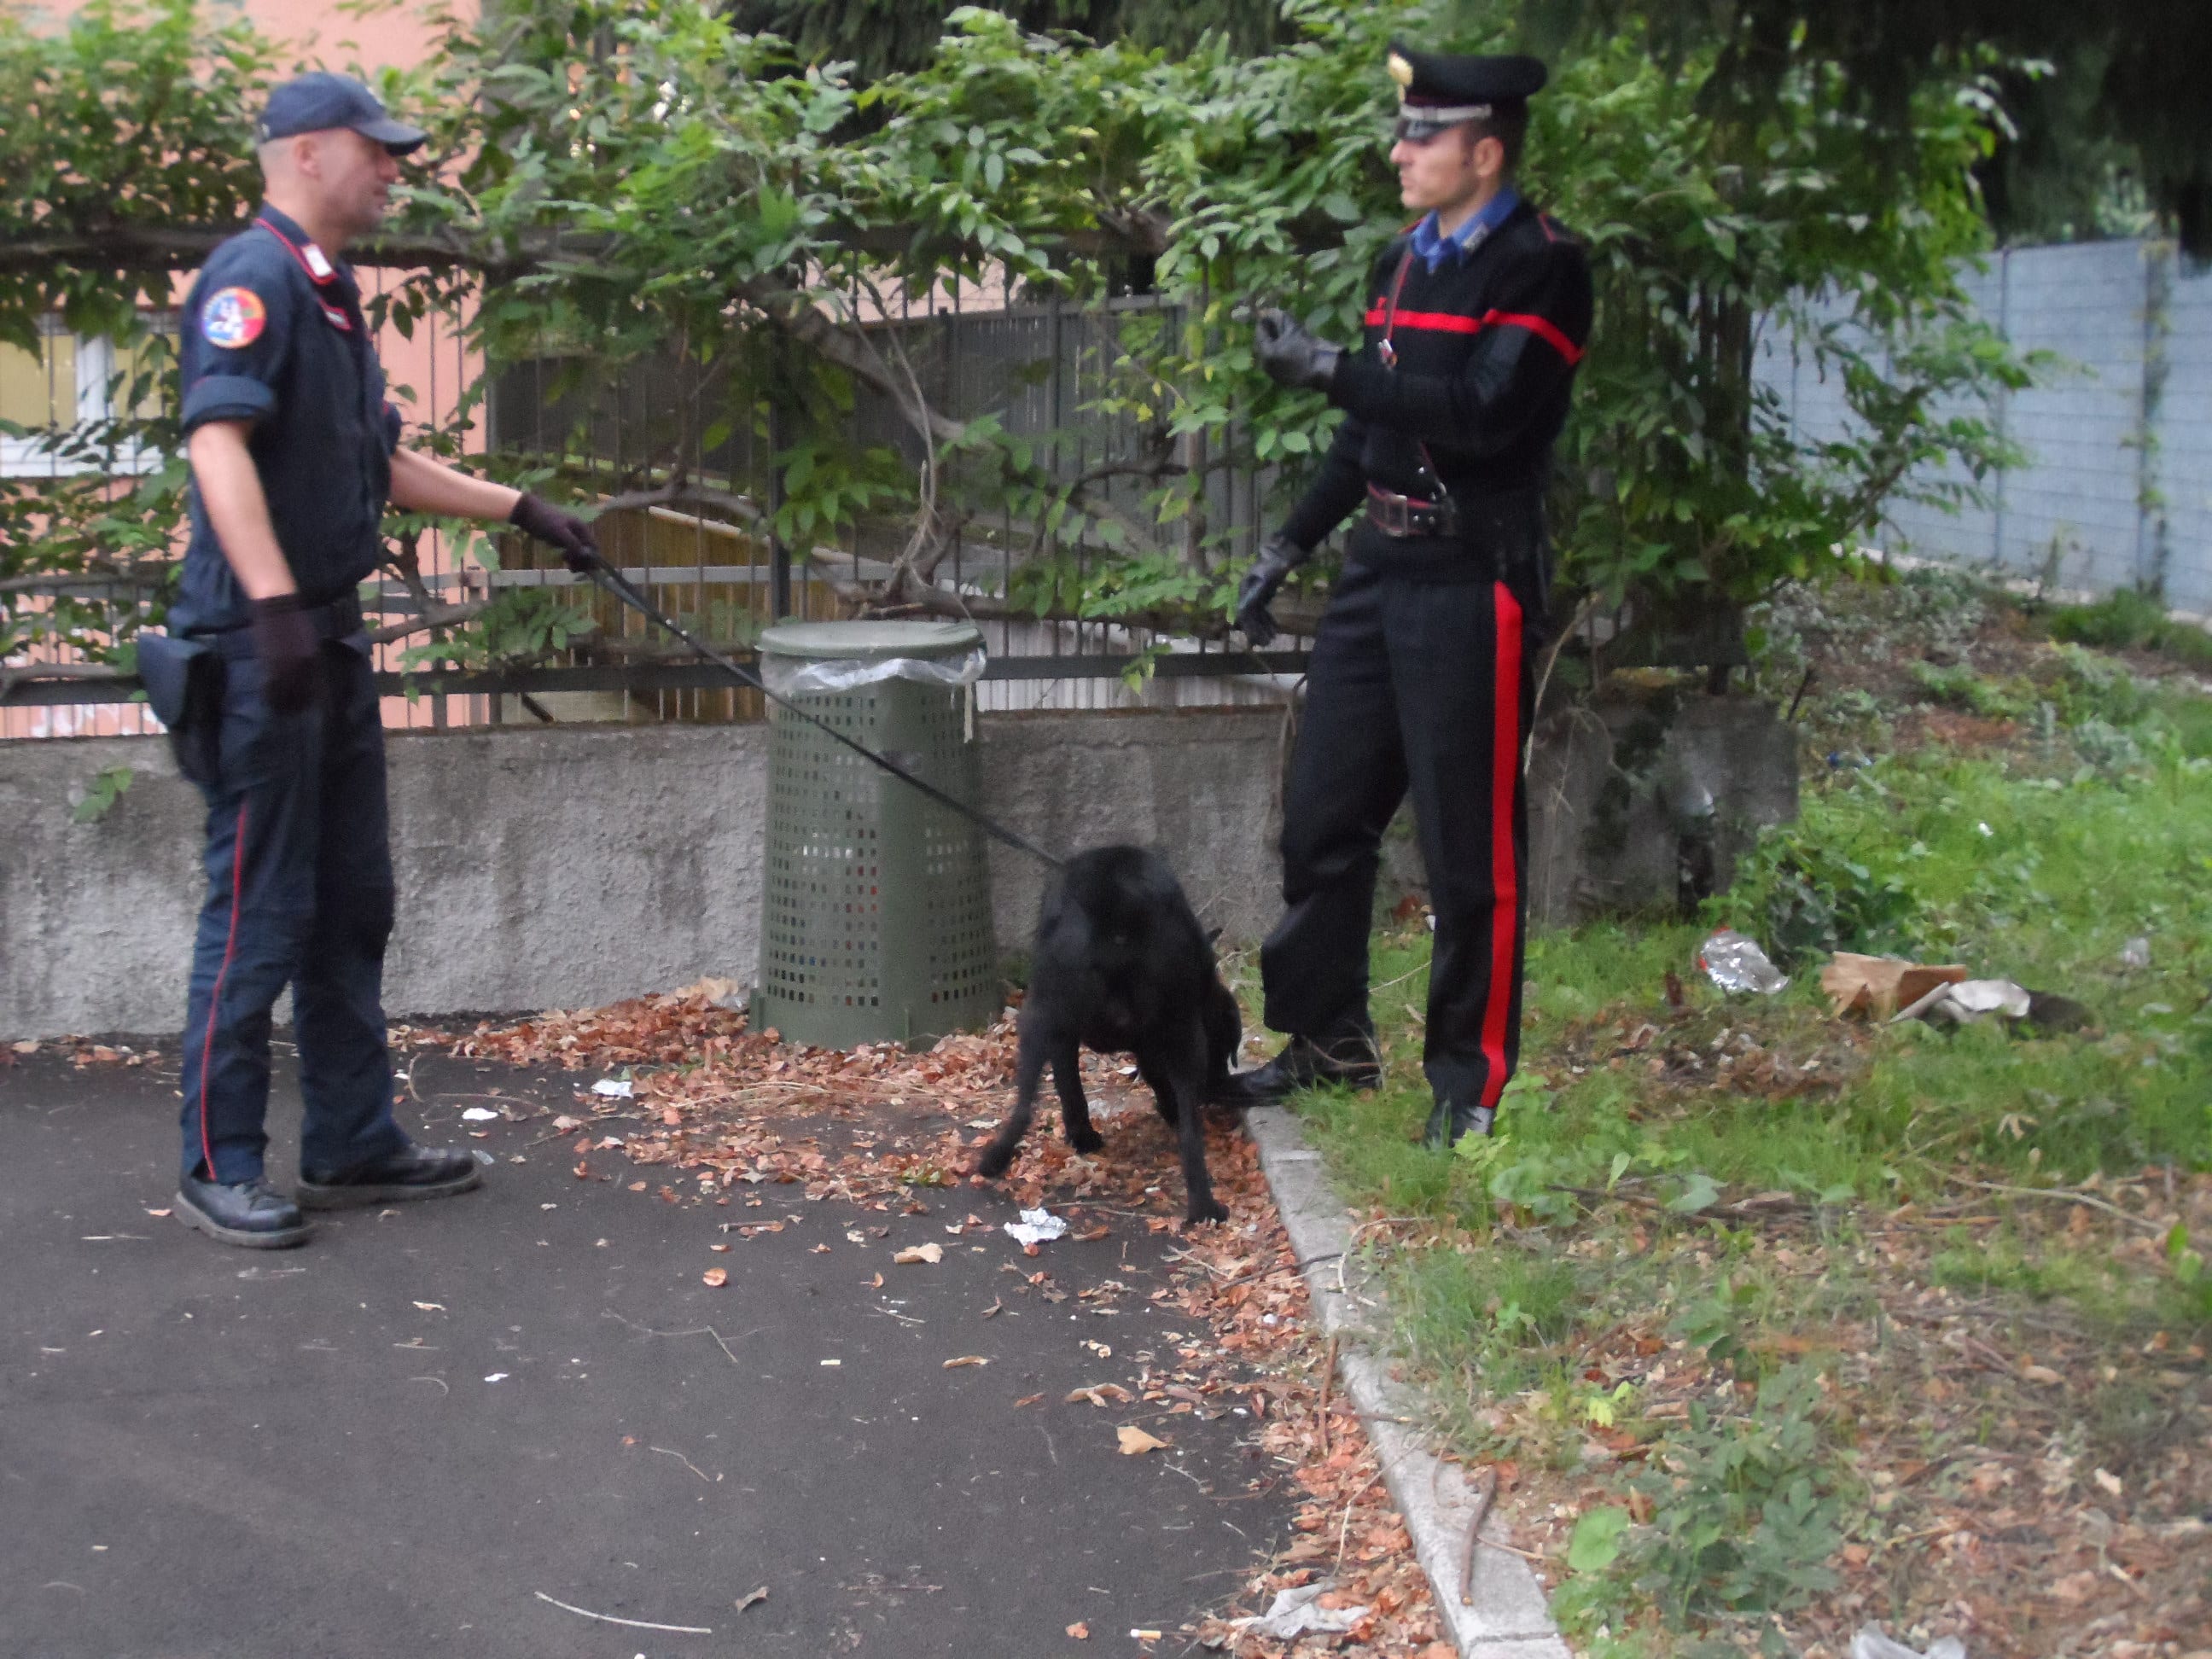 Nel bosco in cerca di droga… trovano i carabinieri ad aspettarli